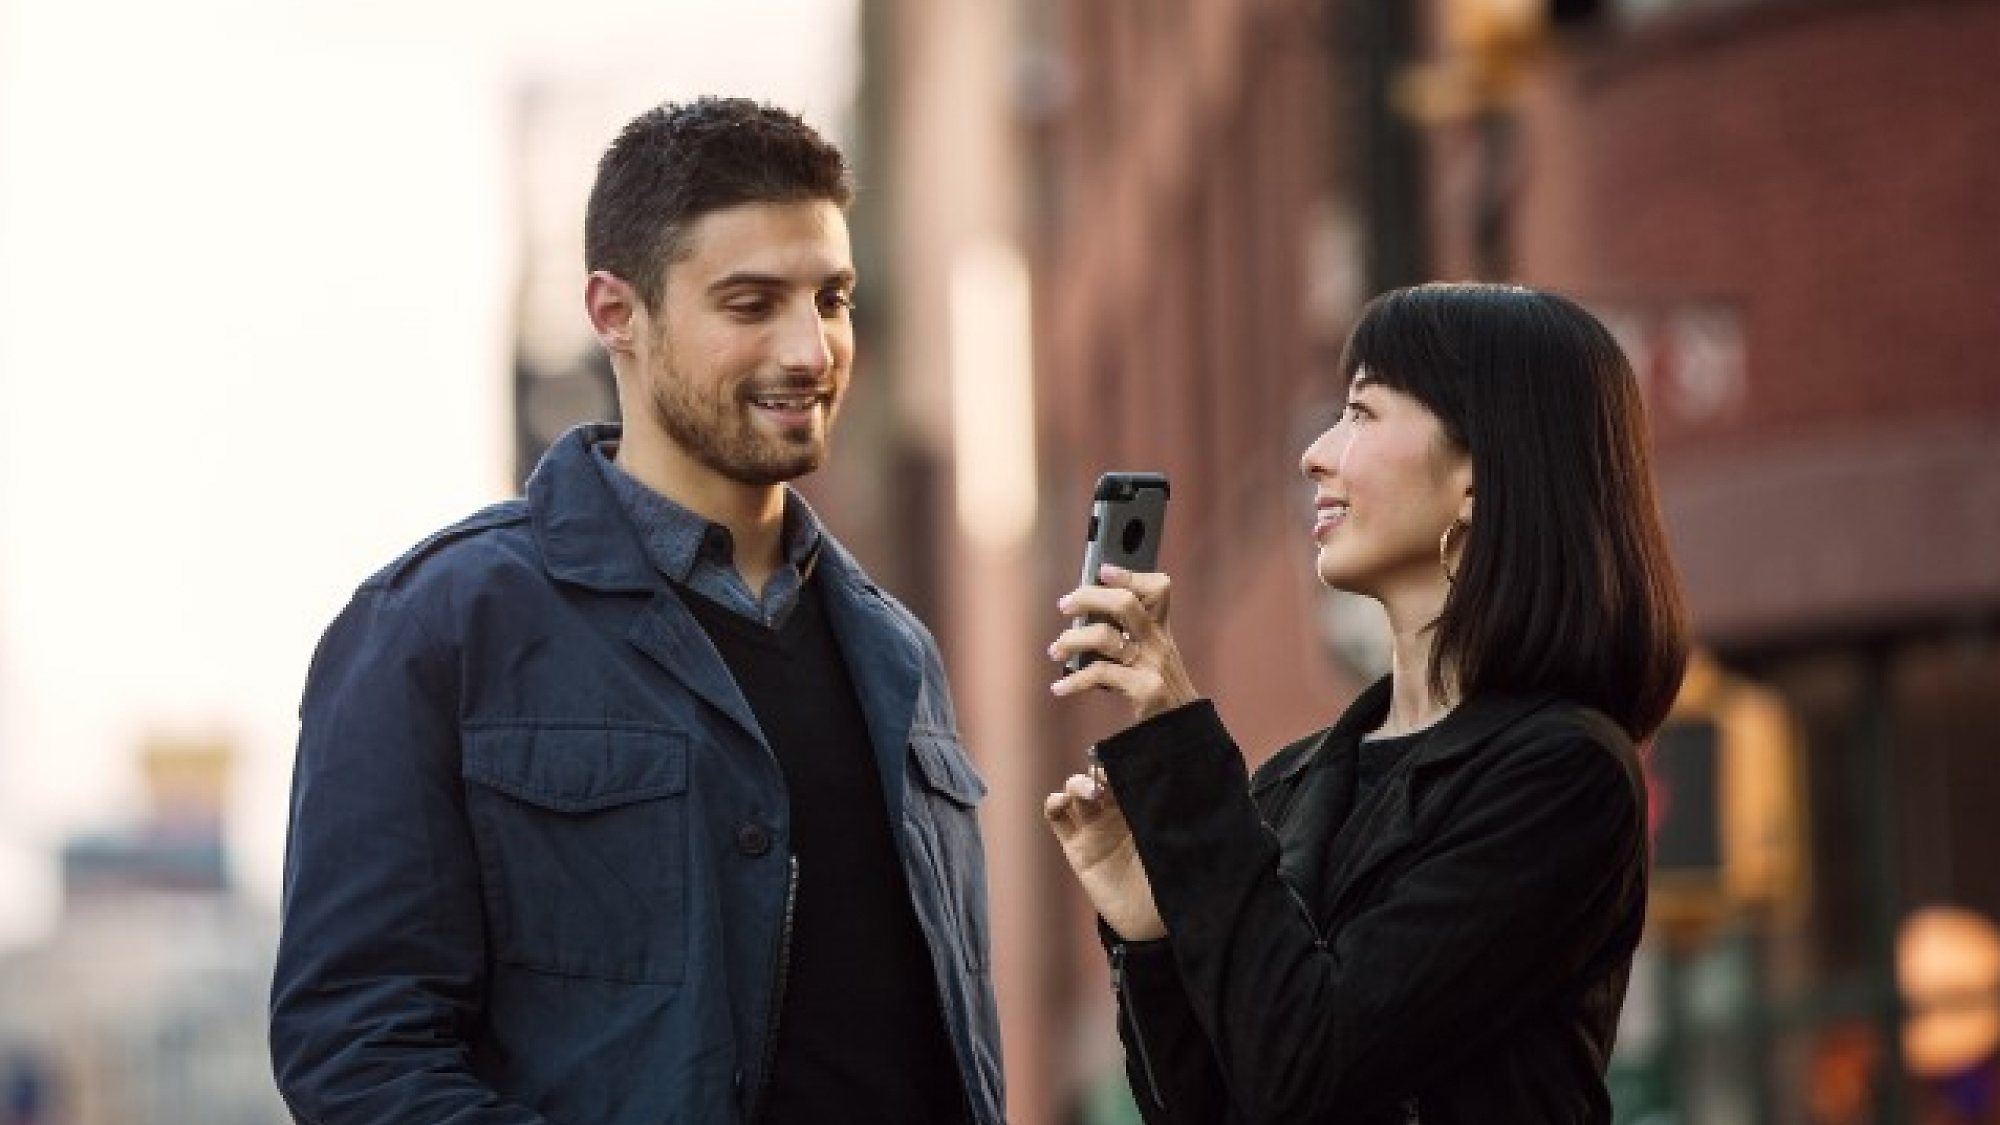 Женщина, держащая смартфон, направляет его на мужчину, который оба стоят на городской улице, улыбаются и разговаривают.